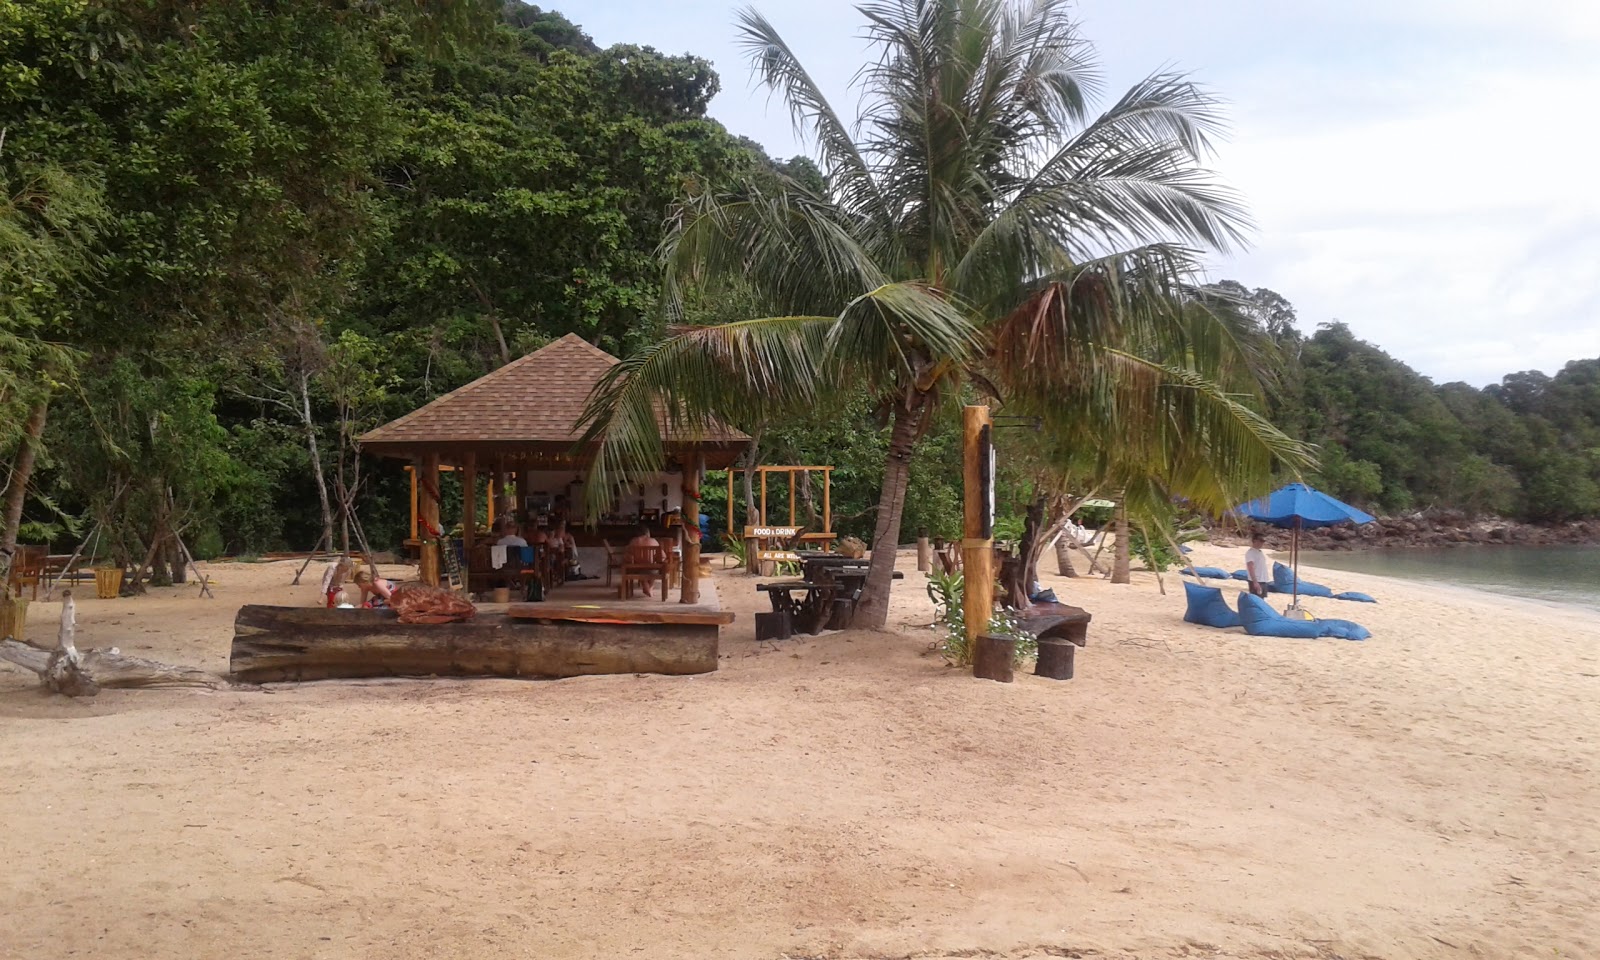 Fotografie cu Koh Ngai Paradise Beach - locul popular printre cunoscătorii de relaxare